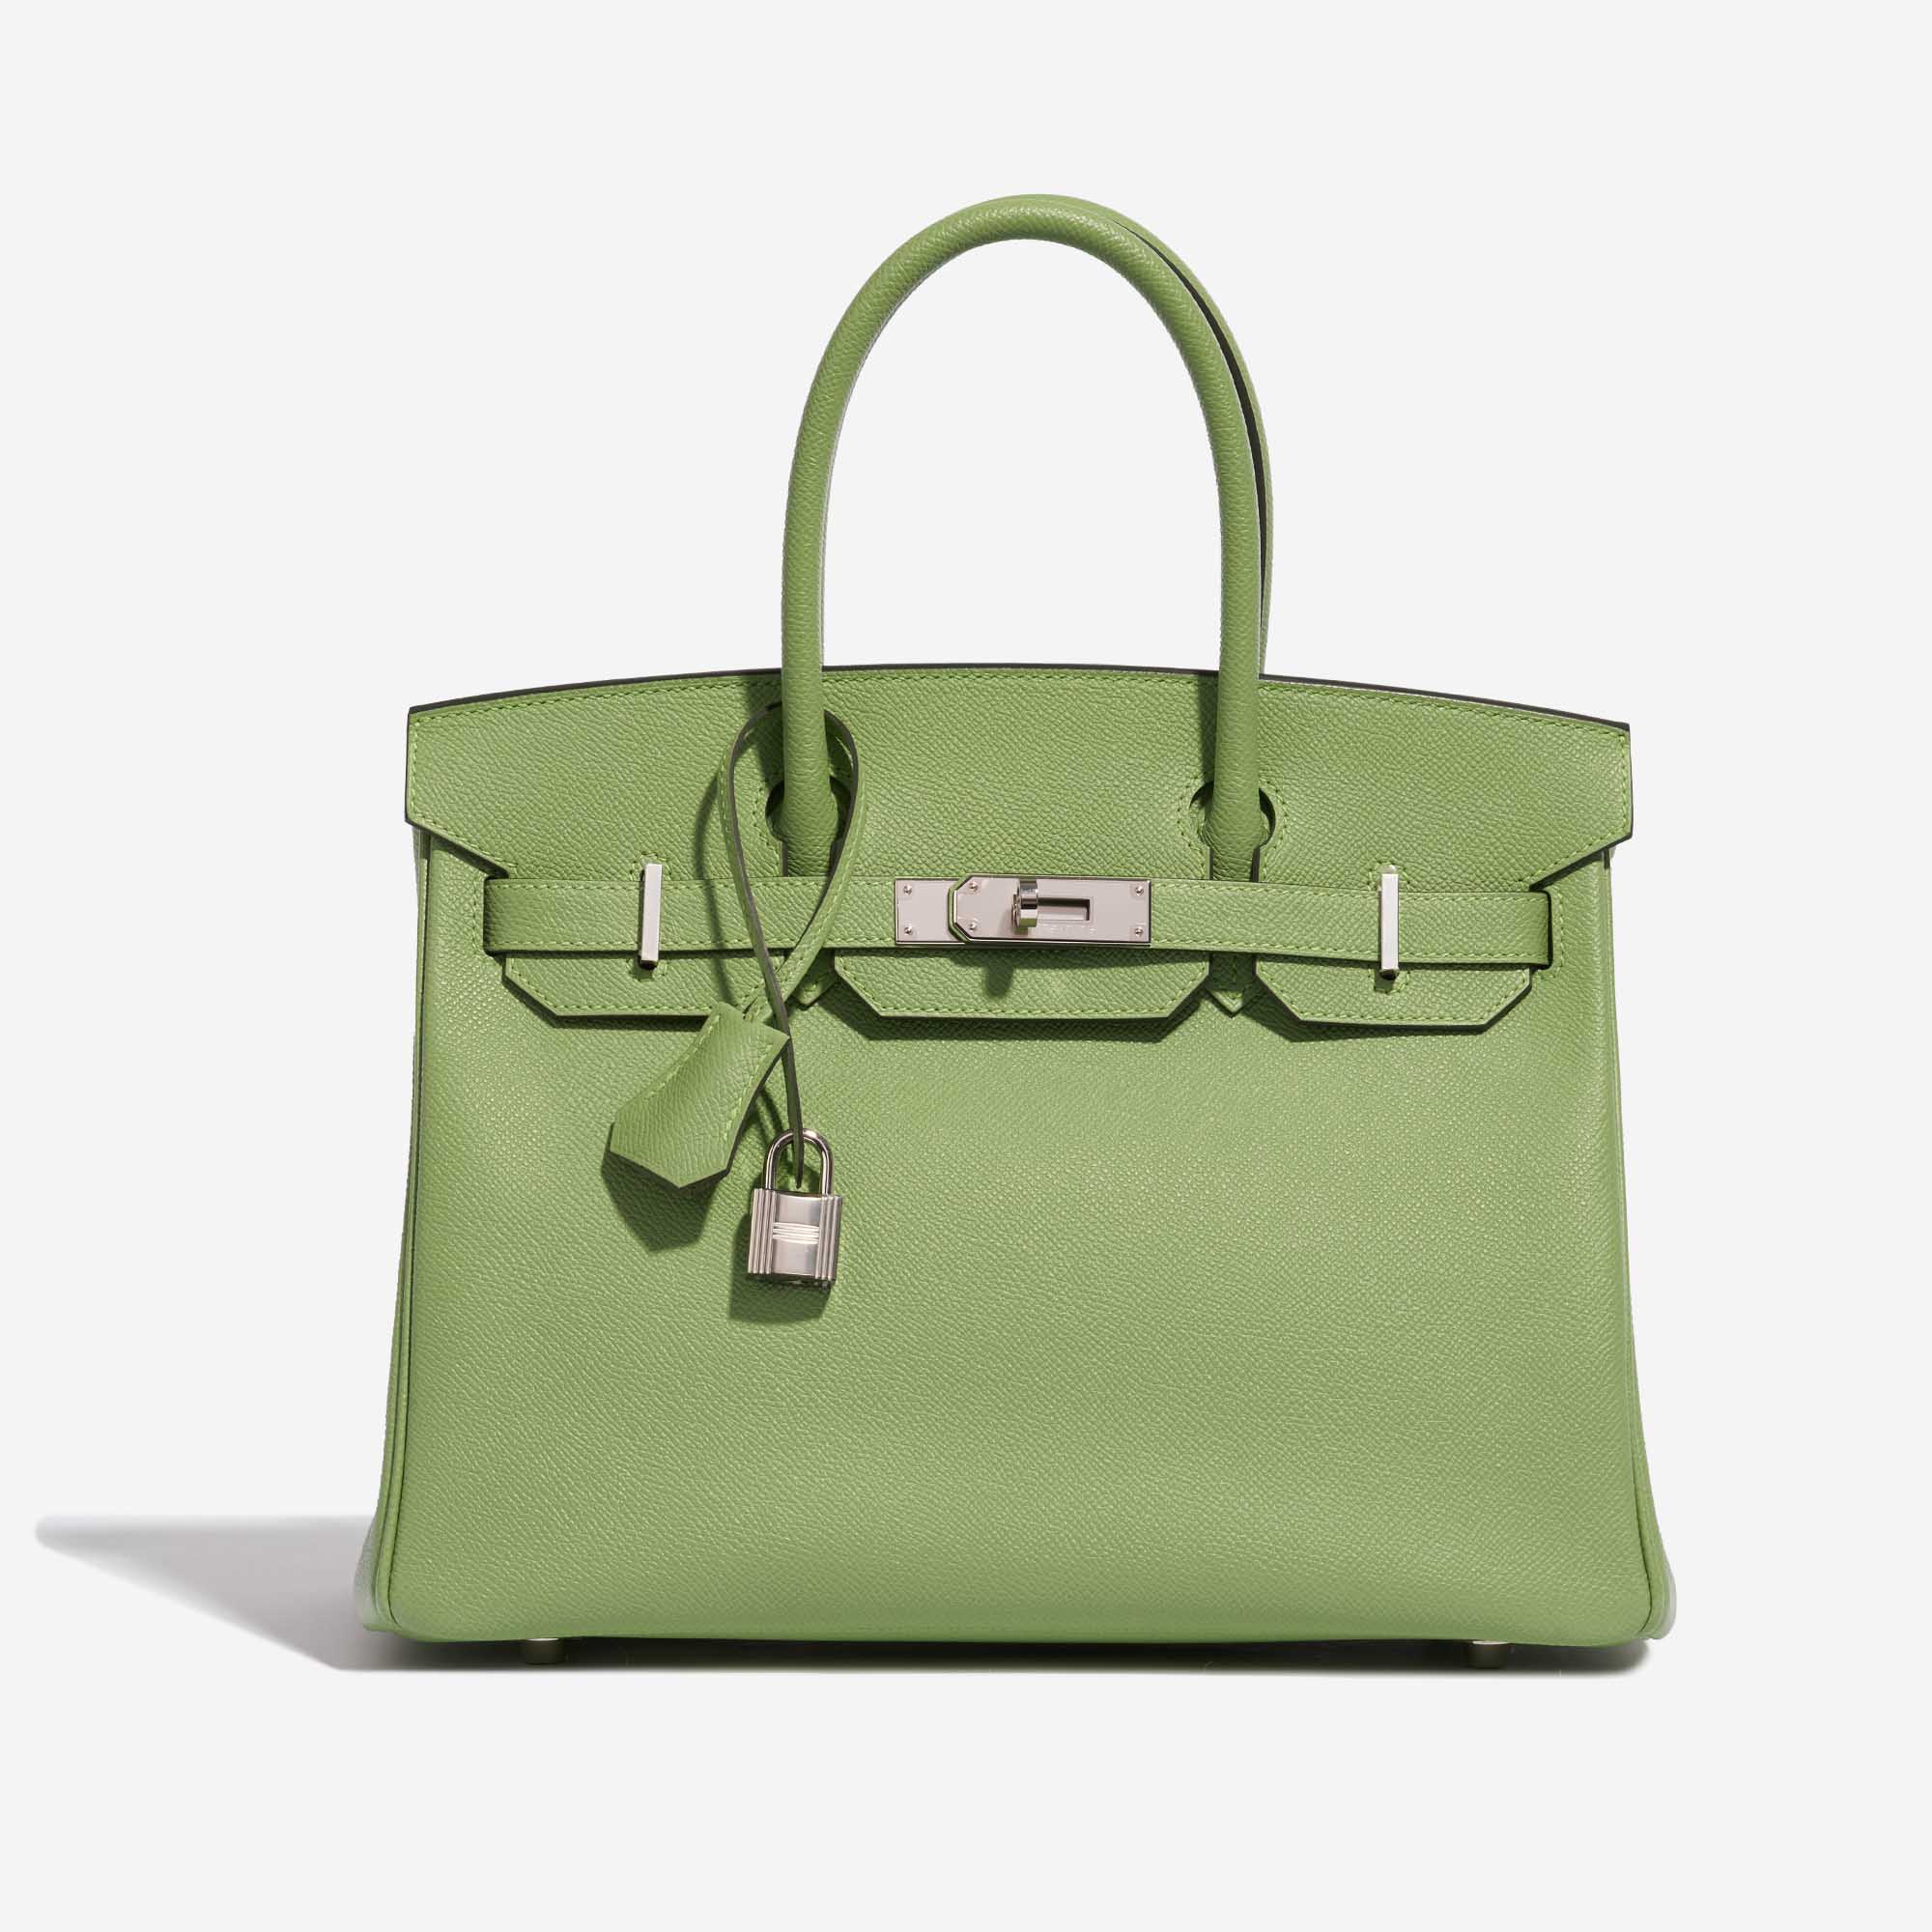 Pre-owned Hermès Tasche Birkin 30 Epsom Vert Criquet Grün Front | Verkaufen Sie Ihre Designer-Tasche auf Saclab.com